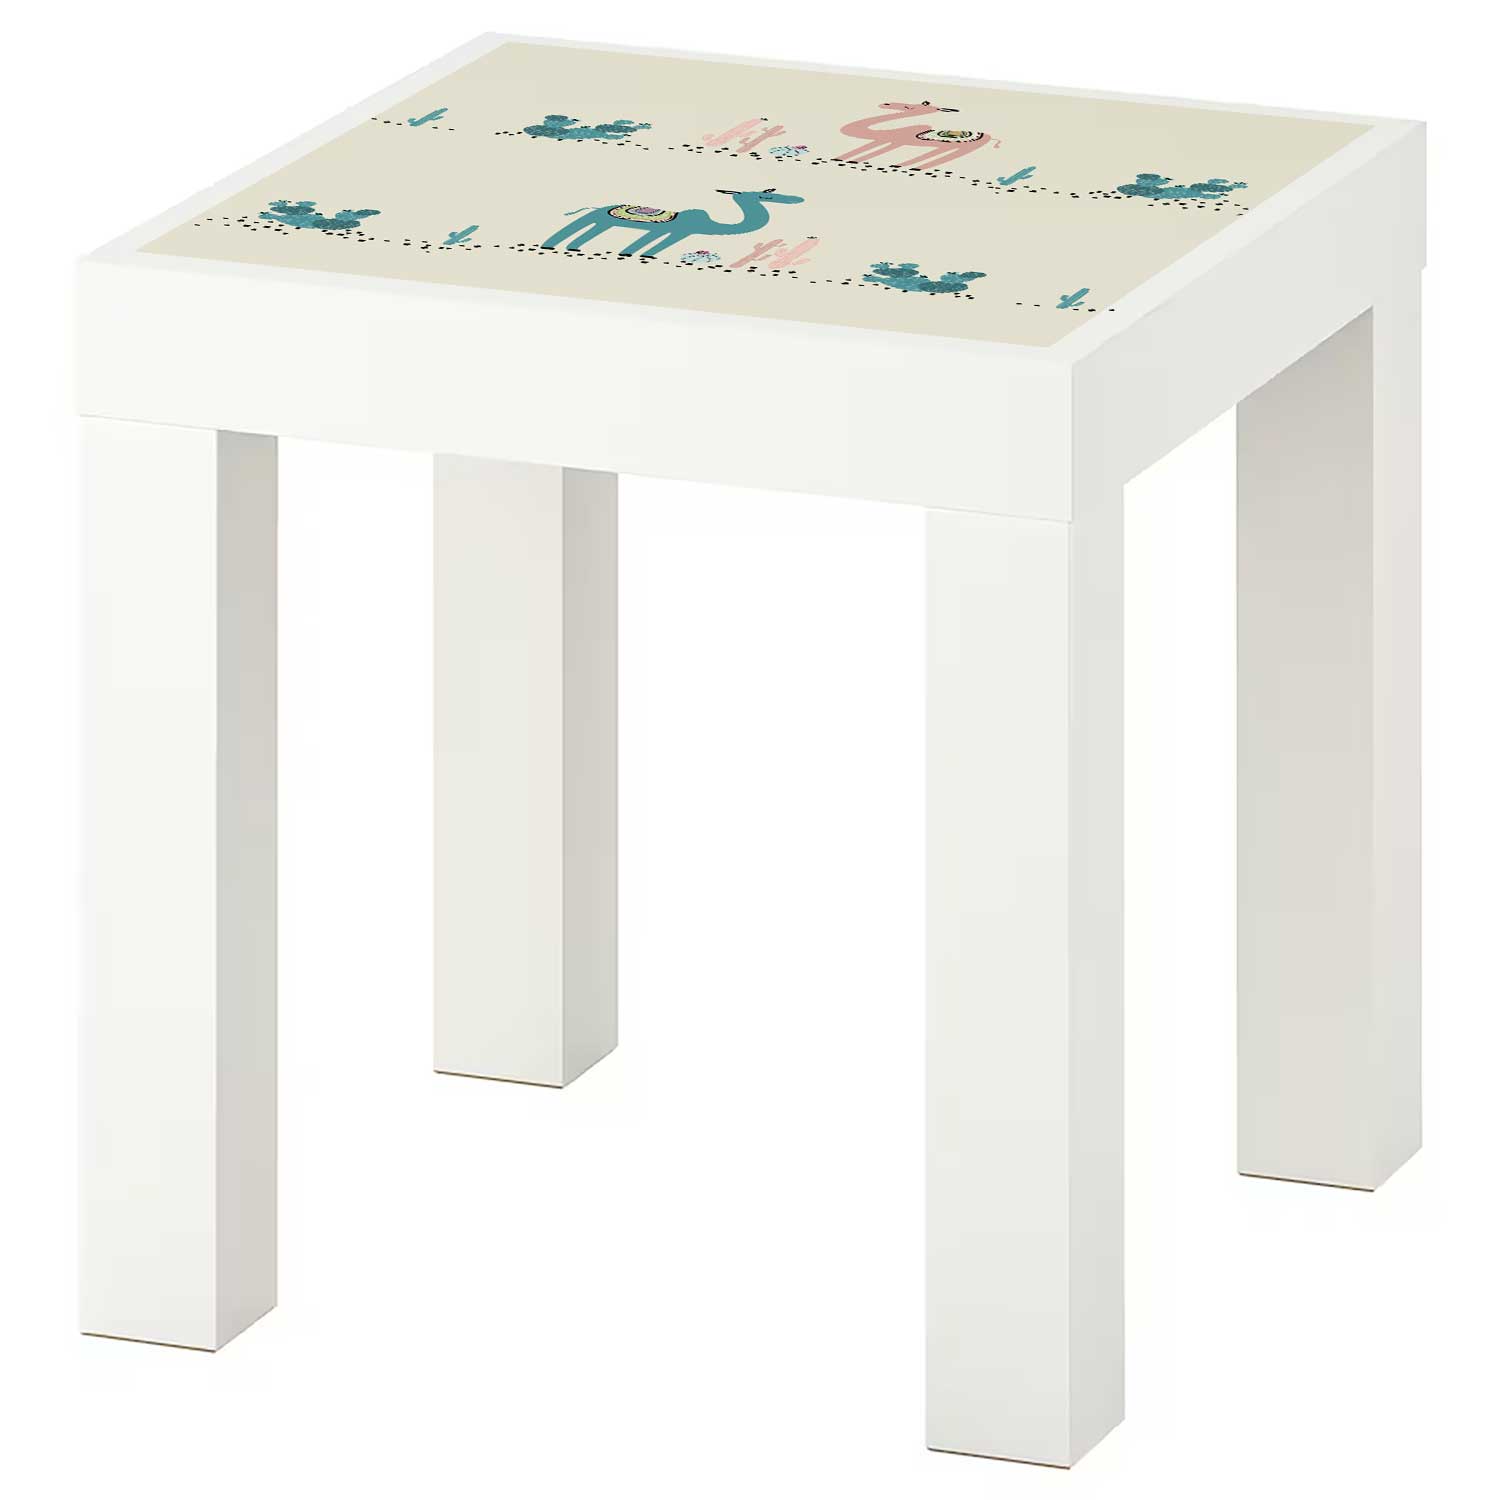 Möbelfolie Kinder für IKEA Lack Tisch 35x35 cm 'Kamele'